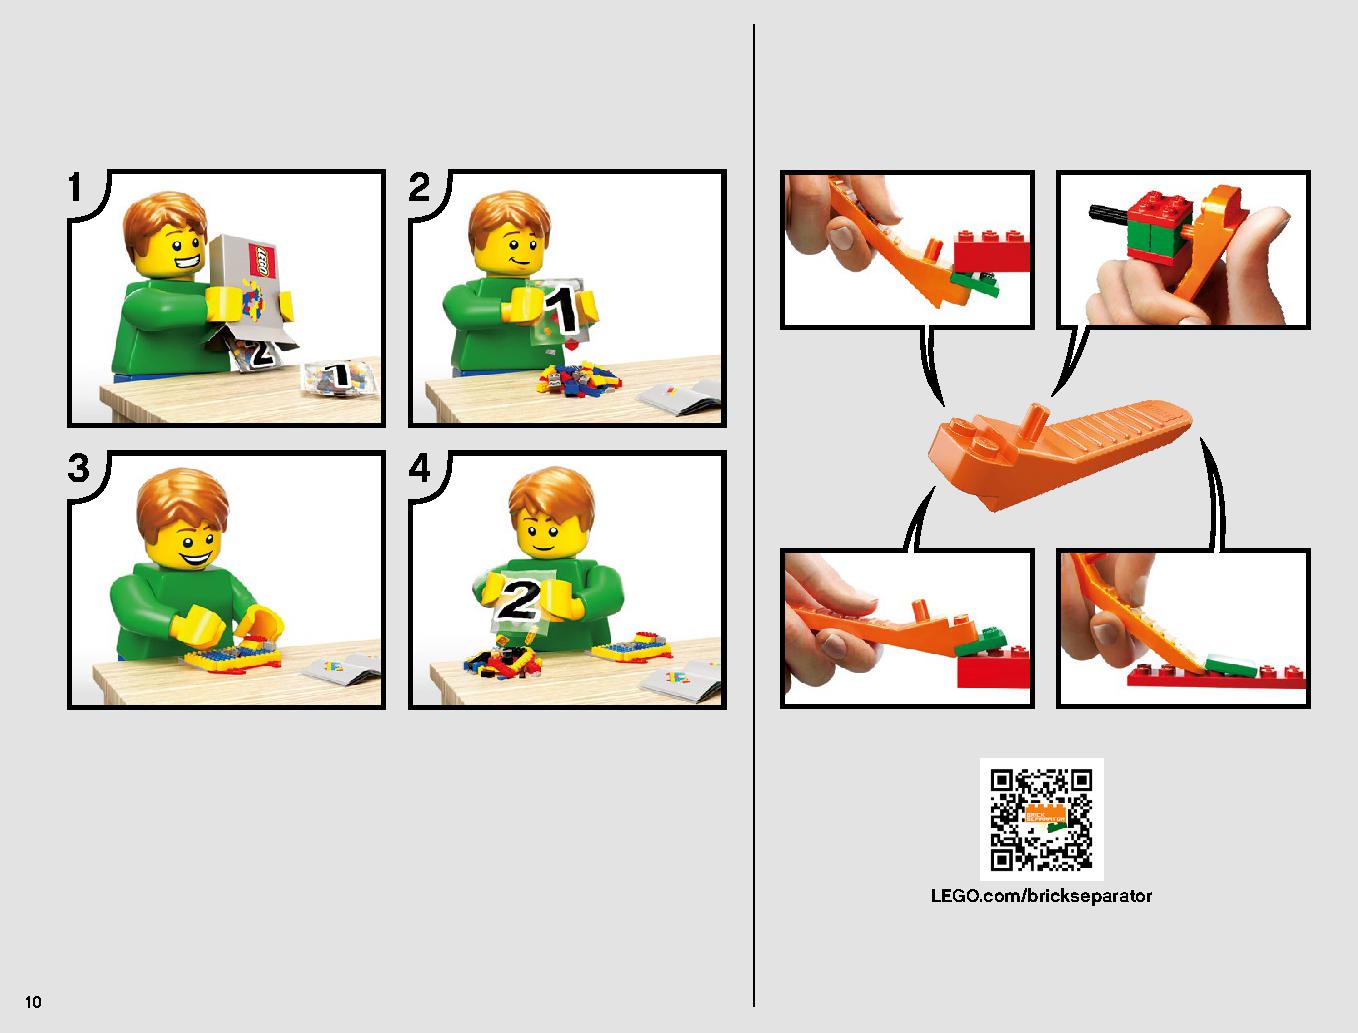 スレーヴl™ – 20周年記念モデル 75243 レゴの商品情報 レゴの説明書・組立方法 10 page